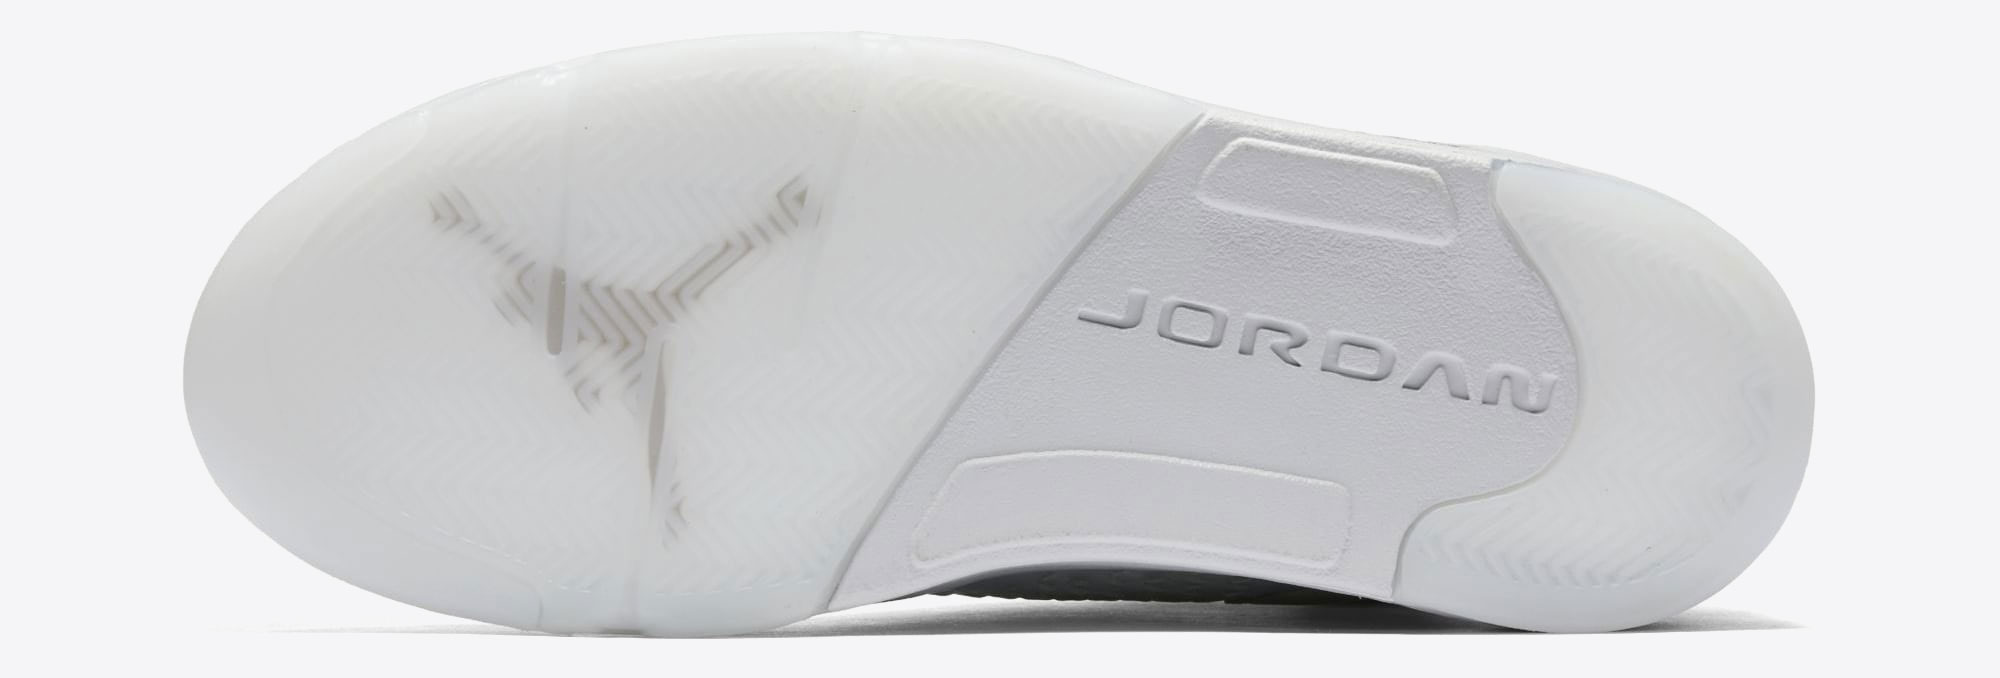 Air Jordan 5 Retro Premium Pure Money 881432 003 3